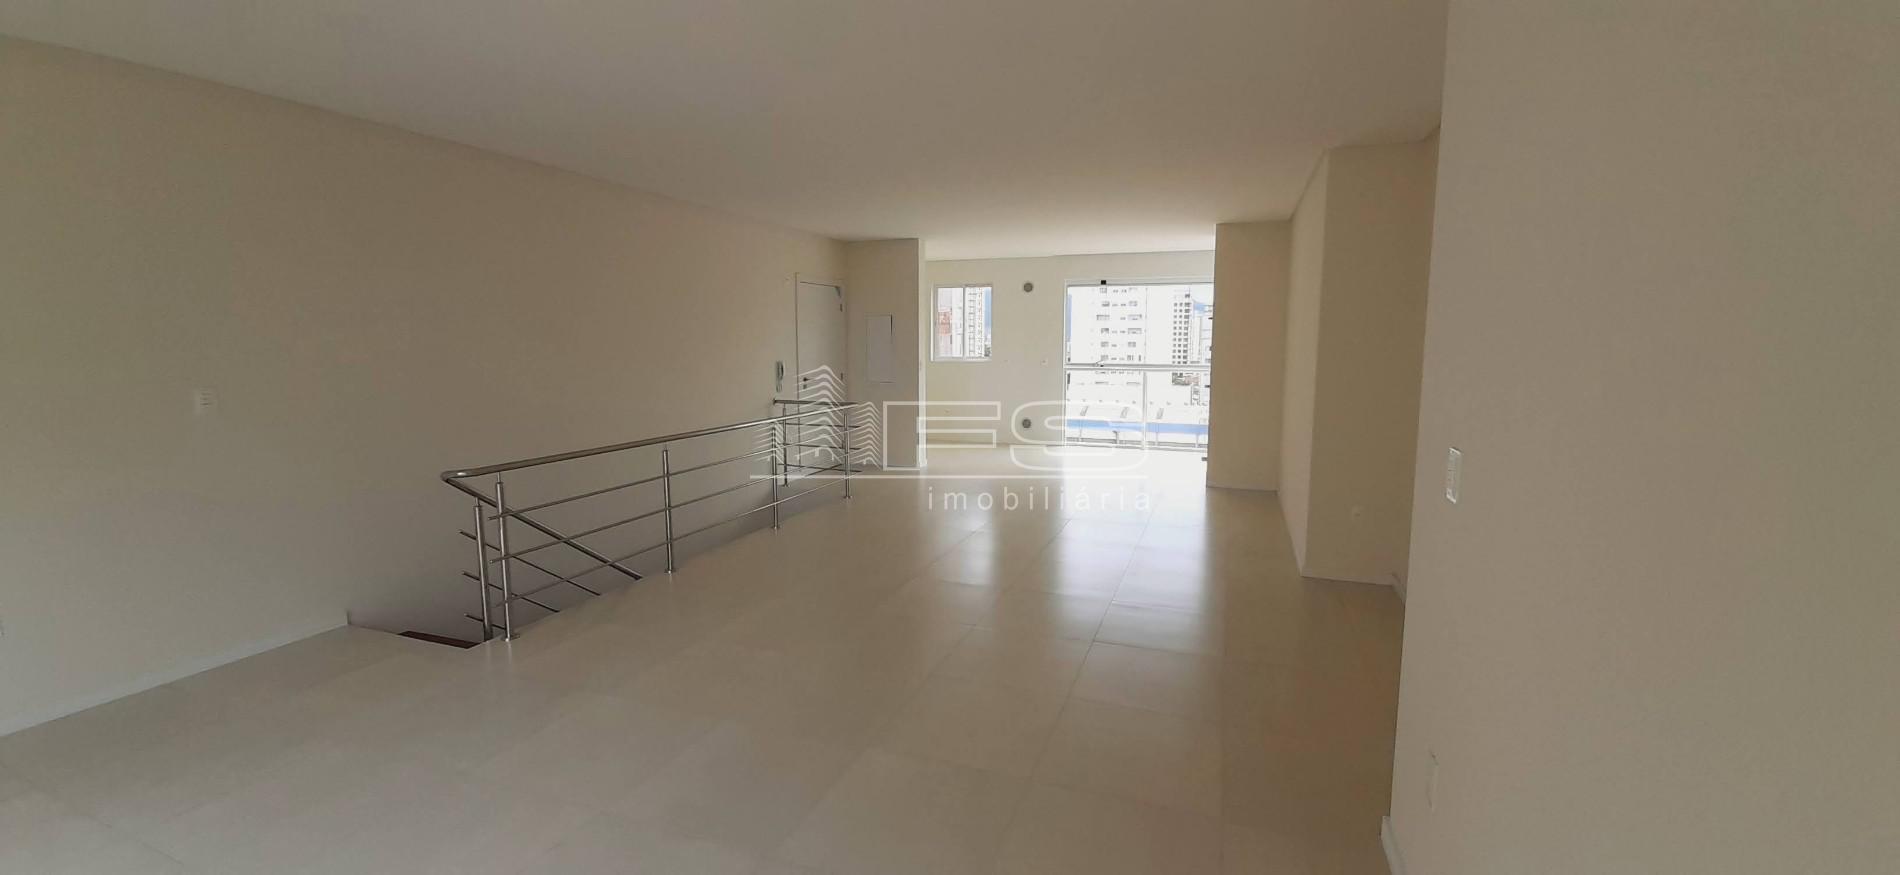 Apartamento com 3 Dormitórios à venda, 137 m² por R$ 975.800,00